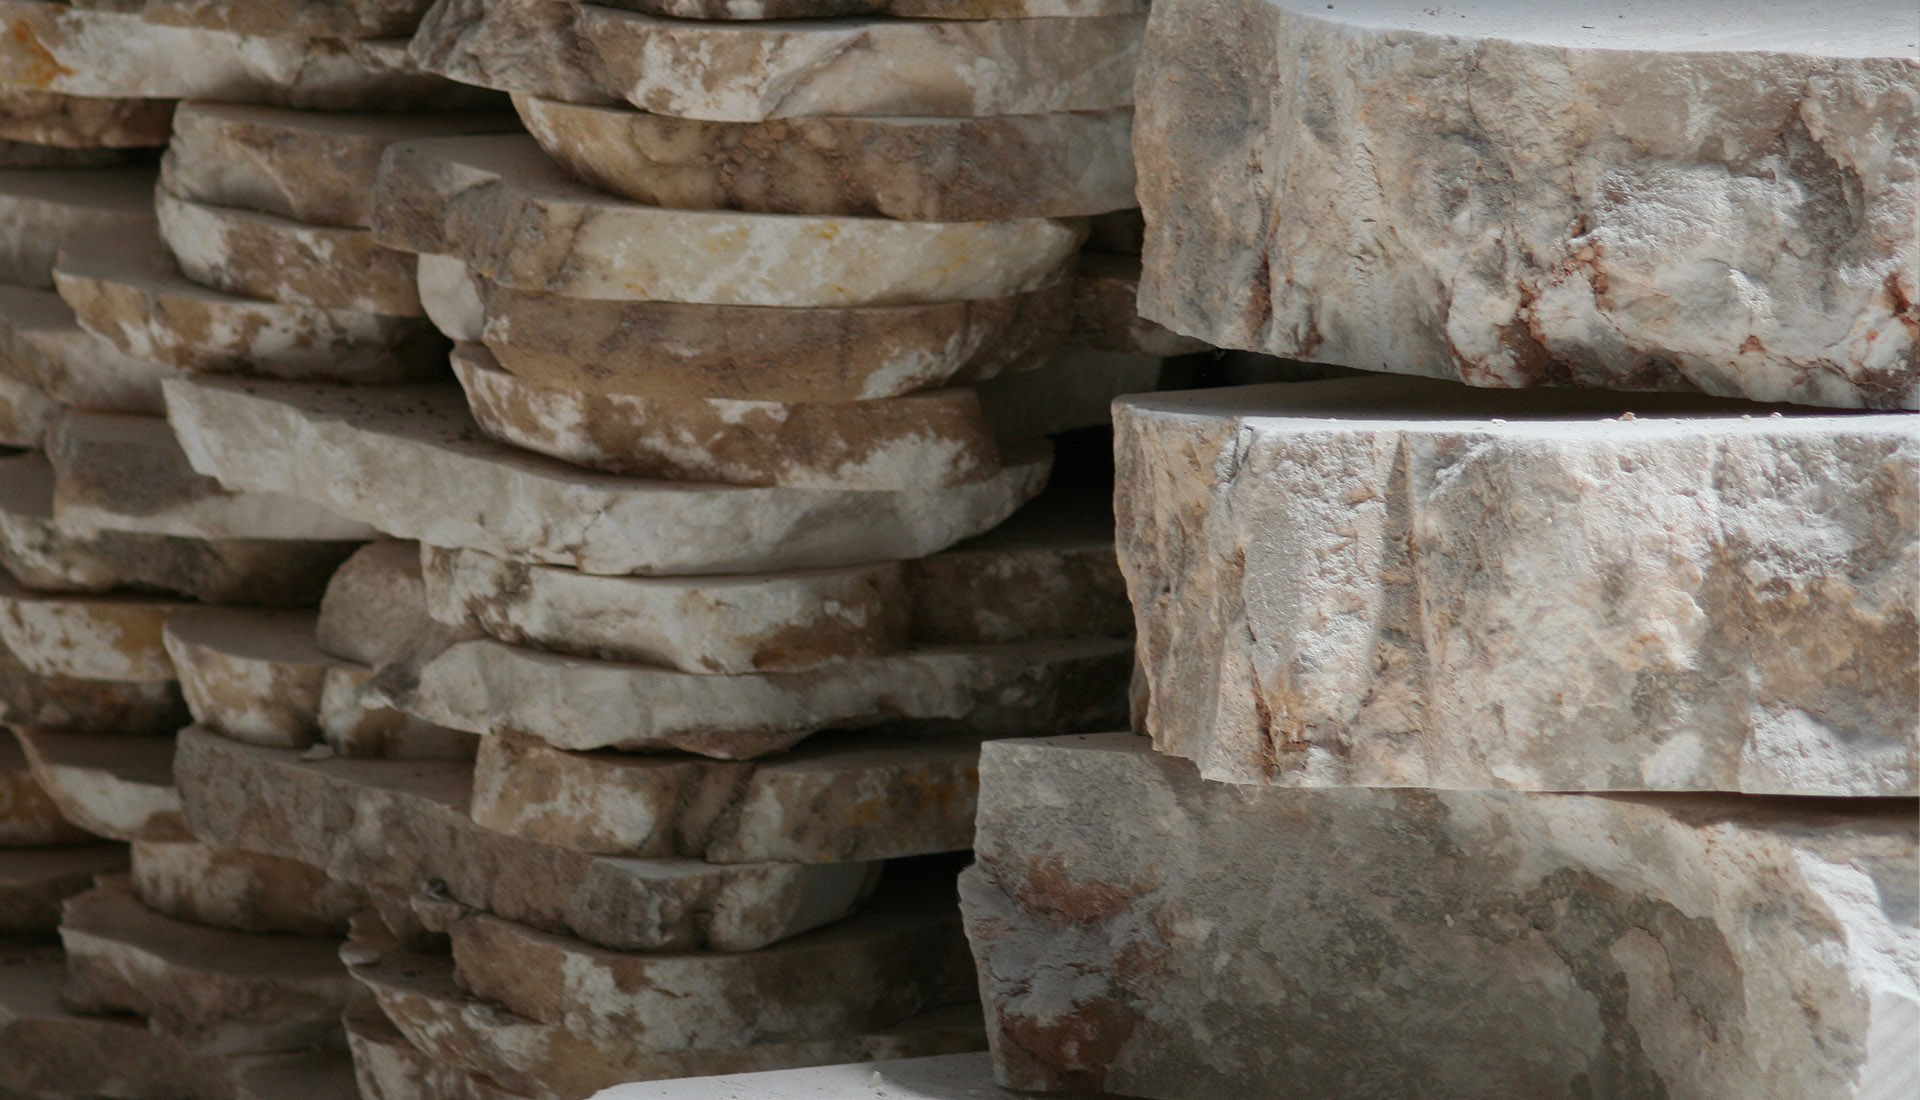 Etruria alabastri - lavorazione alabastro Volterra